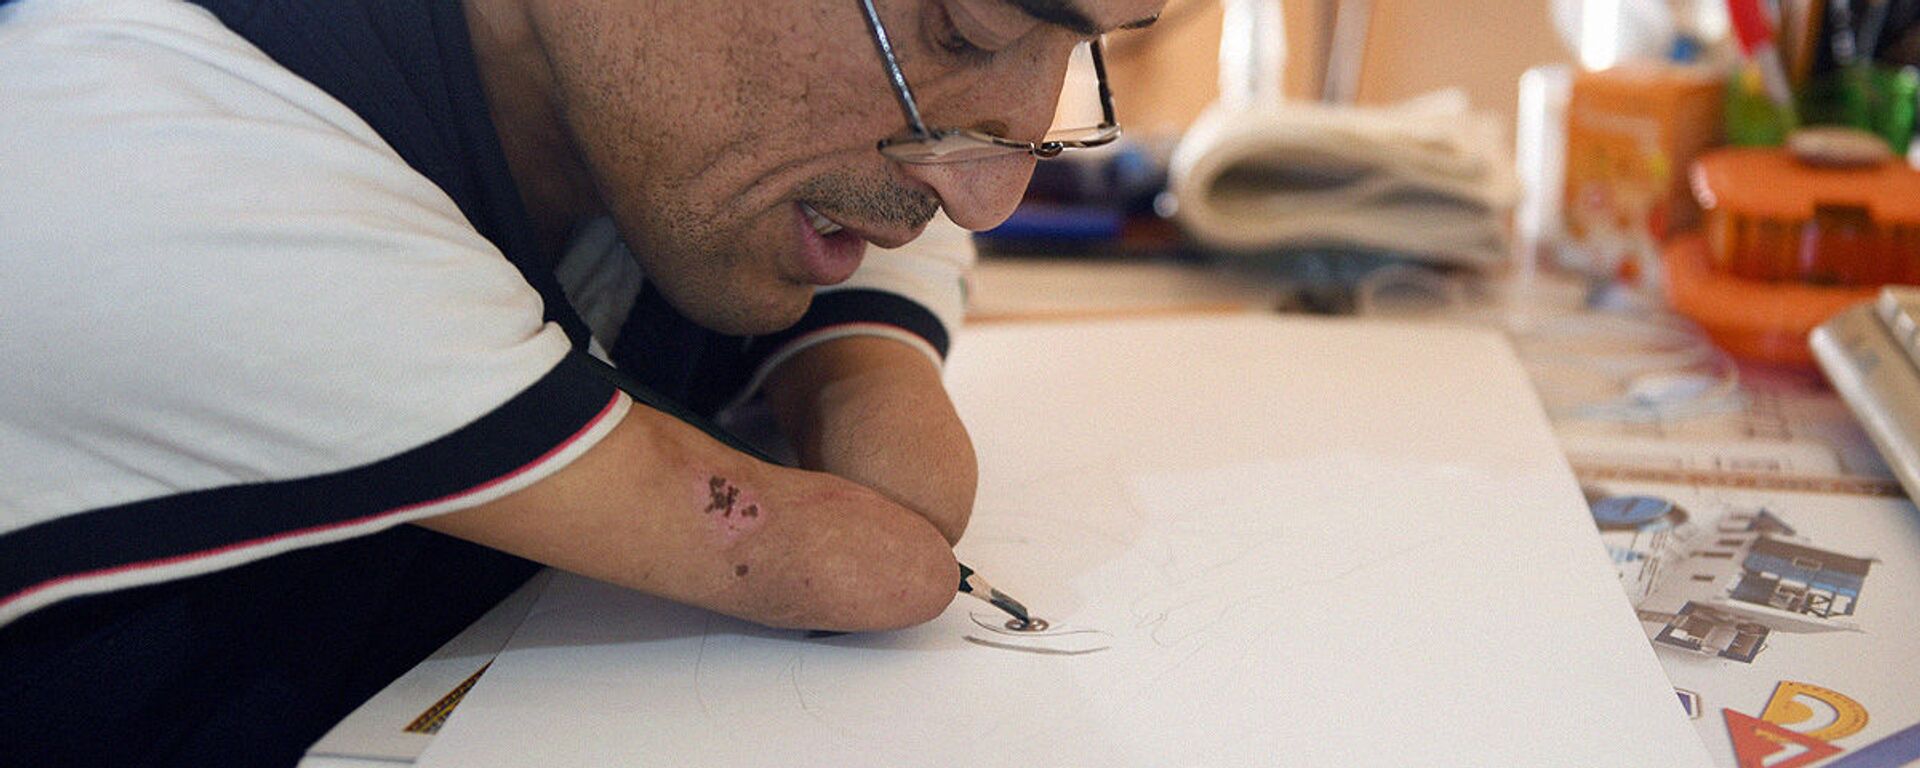 Всевышний одарил меня талантом: узбекский художник рисует без рук и учит детей. - Sputnik Узбекистан, 1920, 11.11.2020